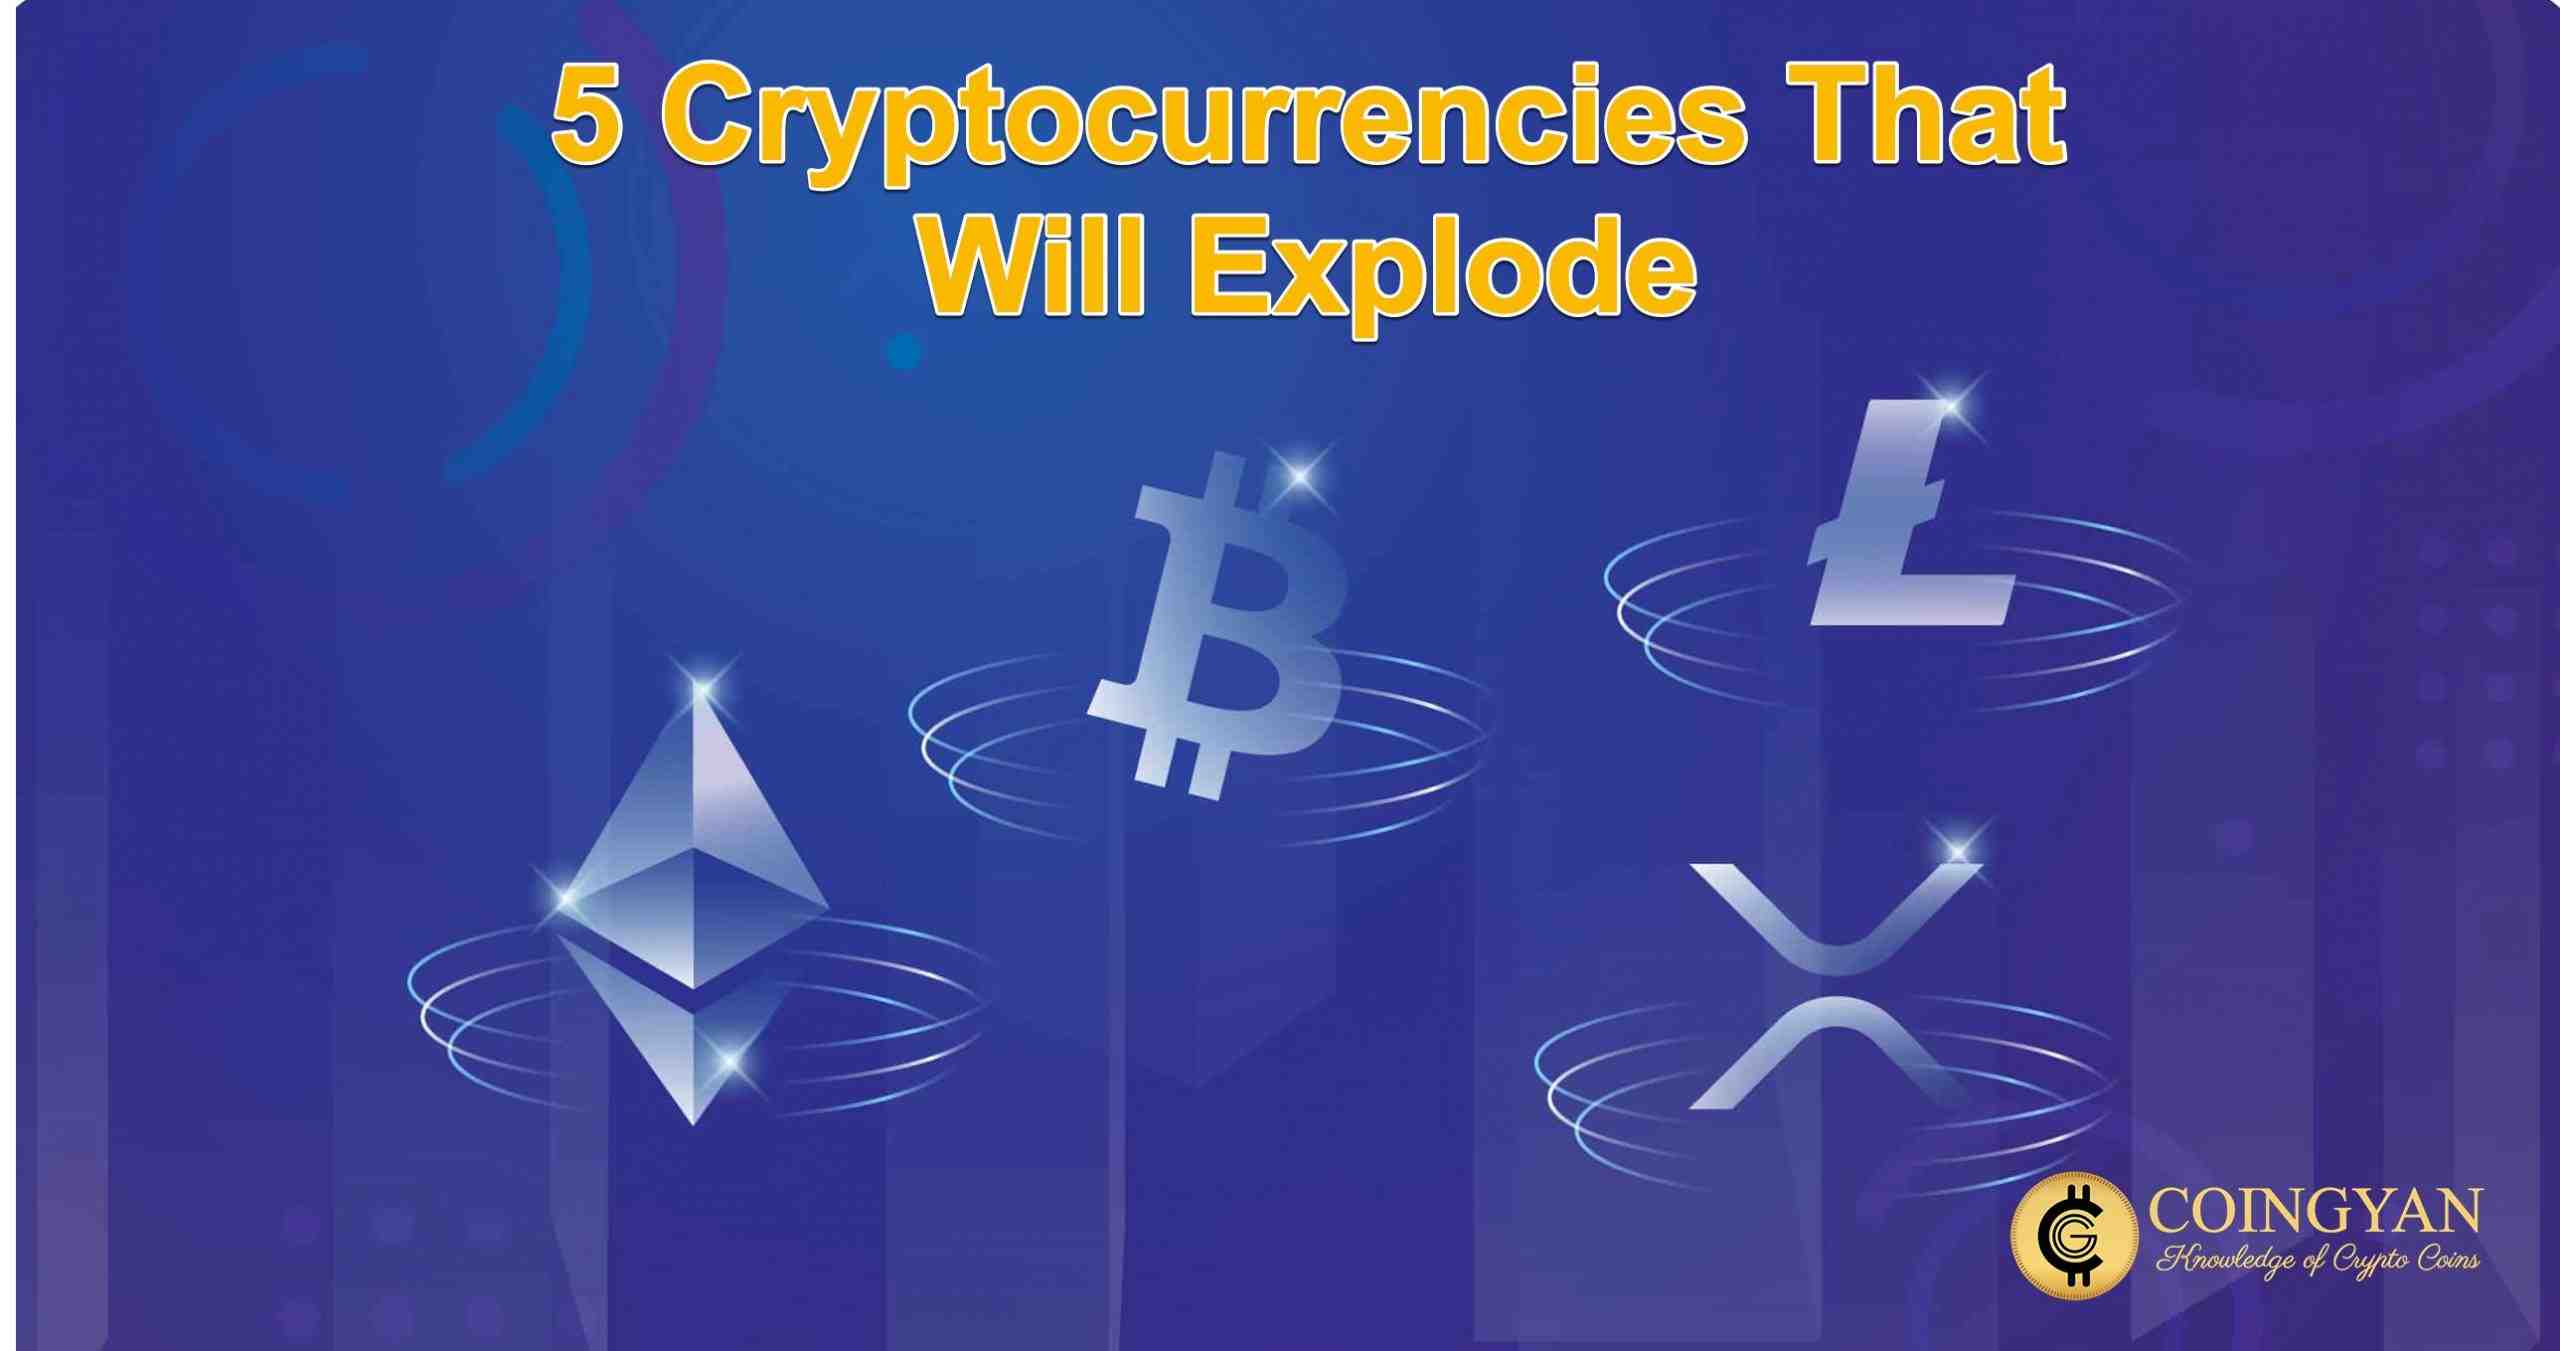 Quelle crypto va exploser en 2021 ?